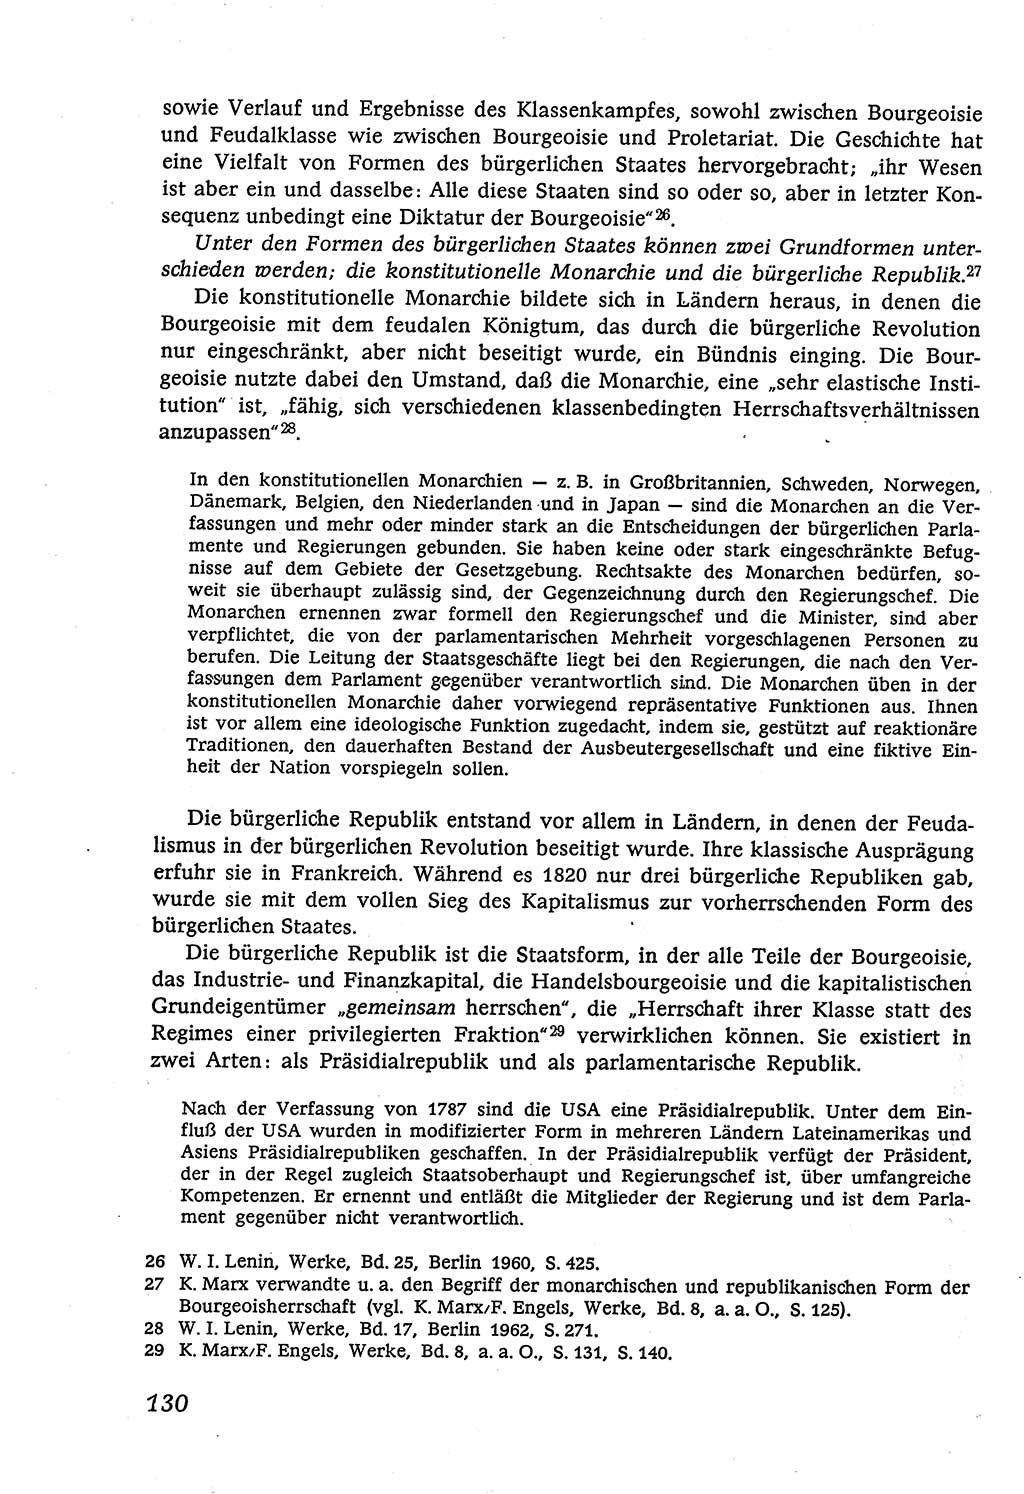 Marxistisch-leninistische (ML) Staats- und Rechtstheorie [Deutsche Demokratische Republik (DDR)], Lehrbuch 1980, Seite 130 (ML St.-R.-Th. DDR Lb. 1980, S. 130)